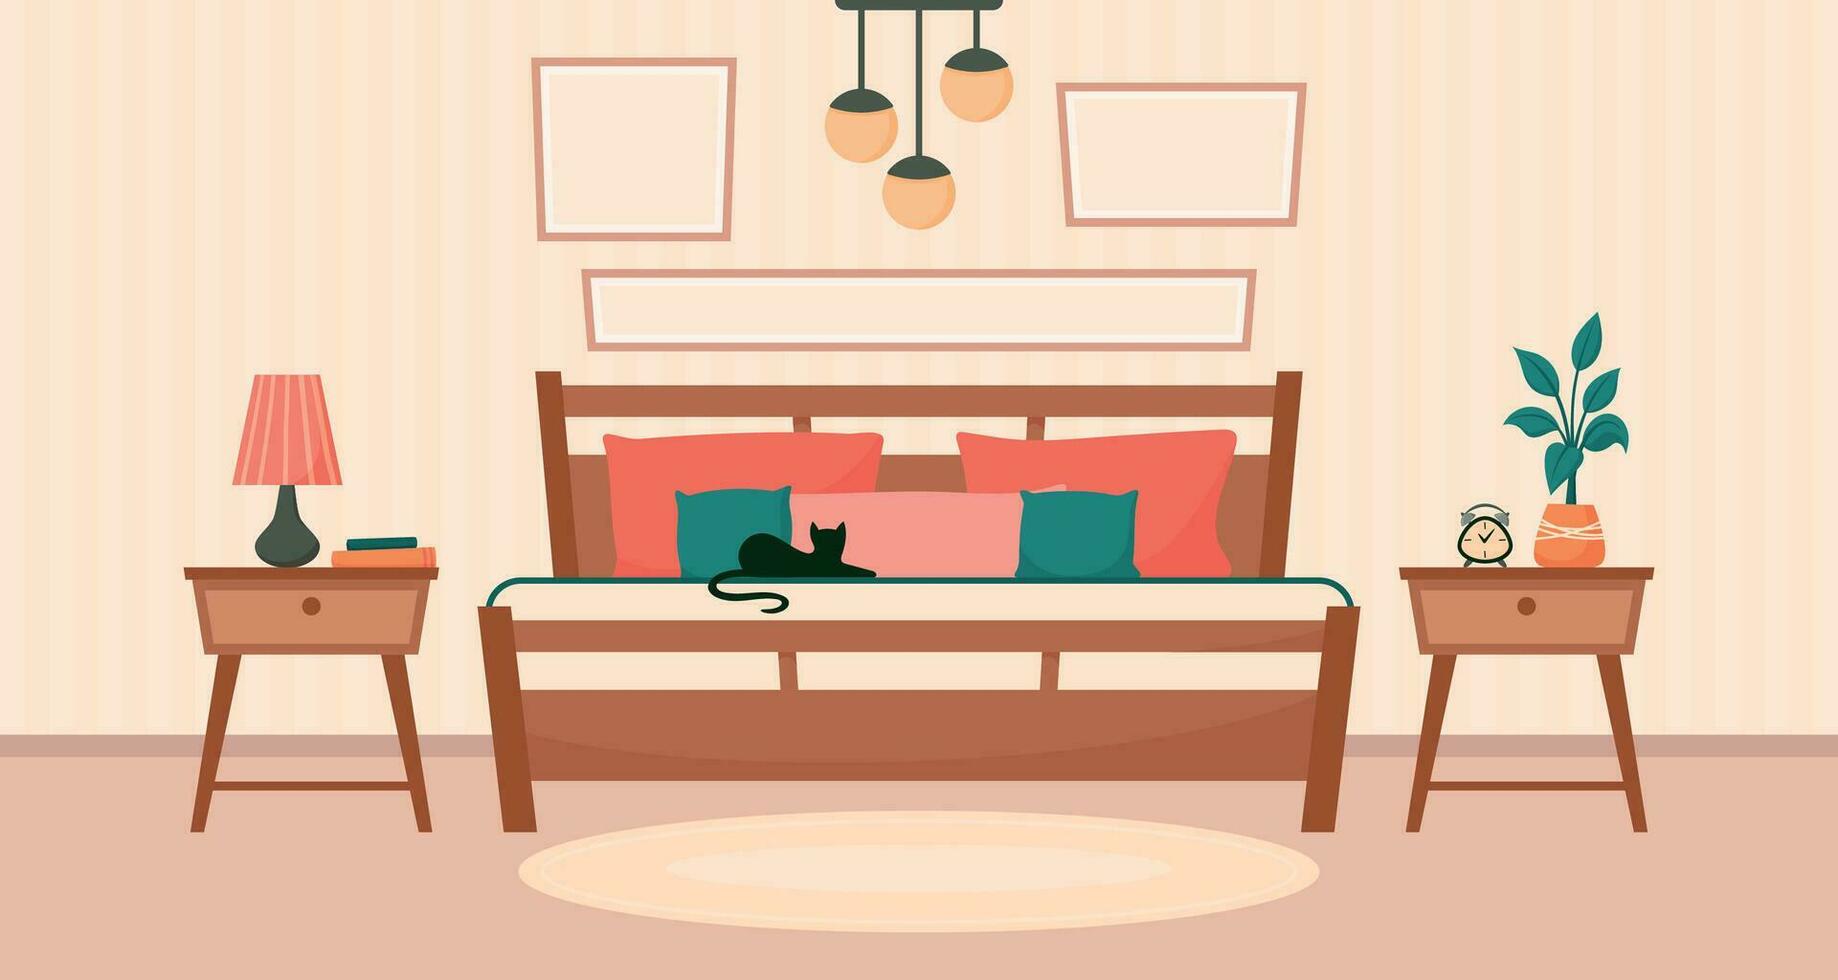 acogedor interior dormitorio con cama, cabecera mesas, alarma reloj, maceta, colgante ligero. vector plano antecedentes modelo ilustración